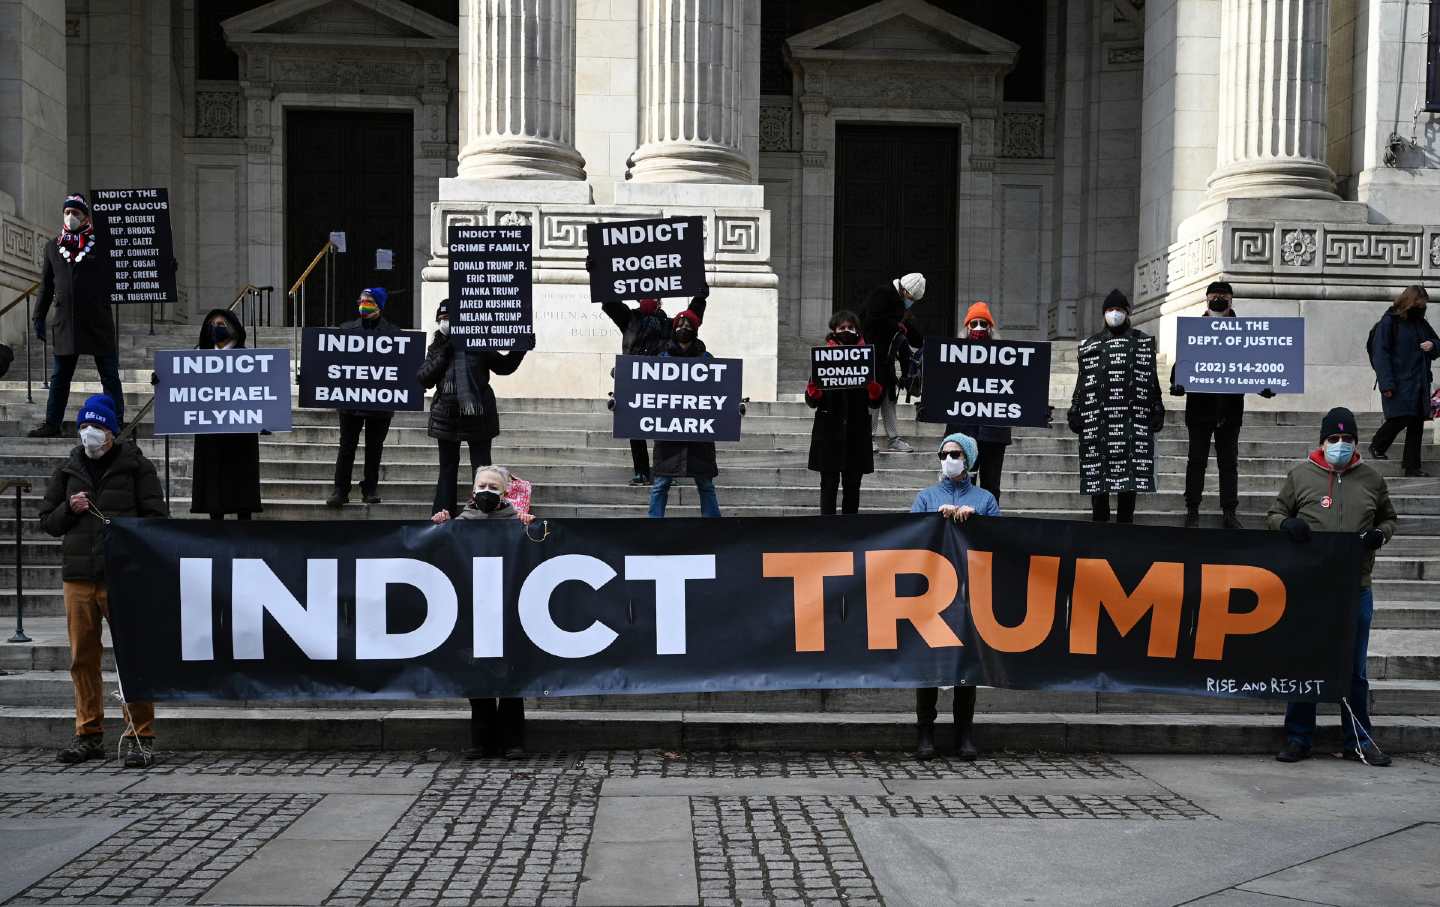 Indict Trump